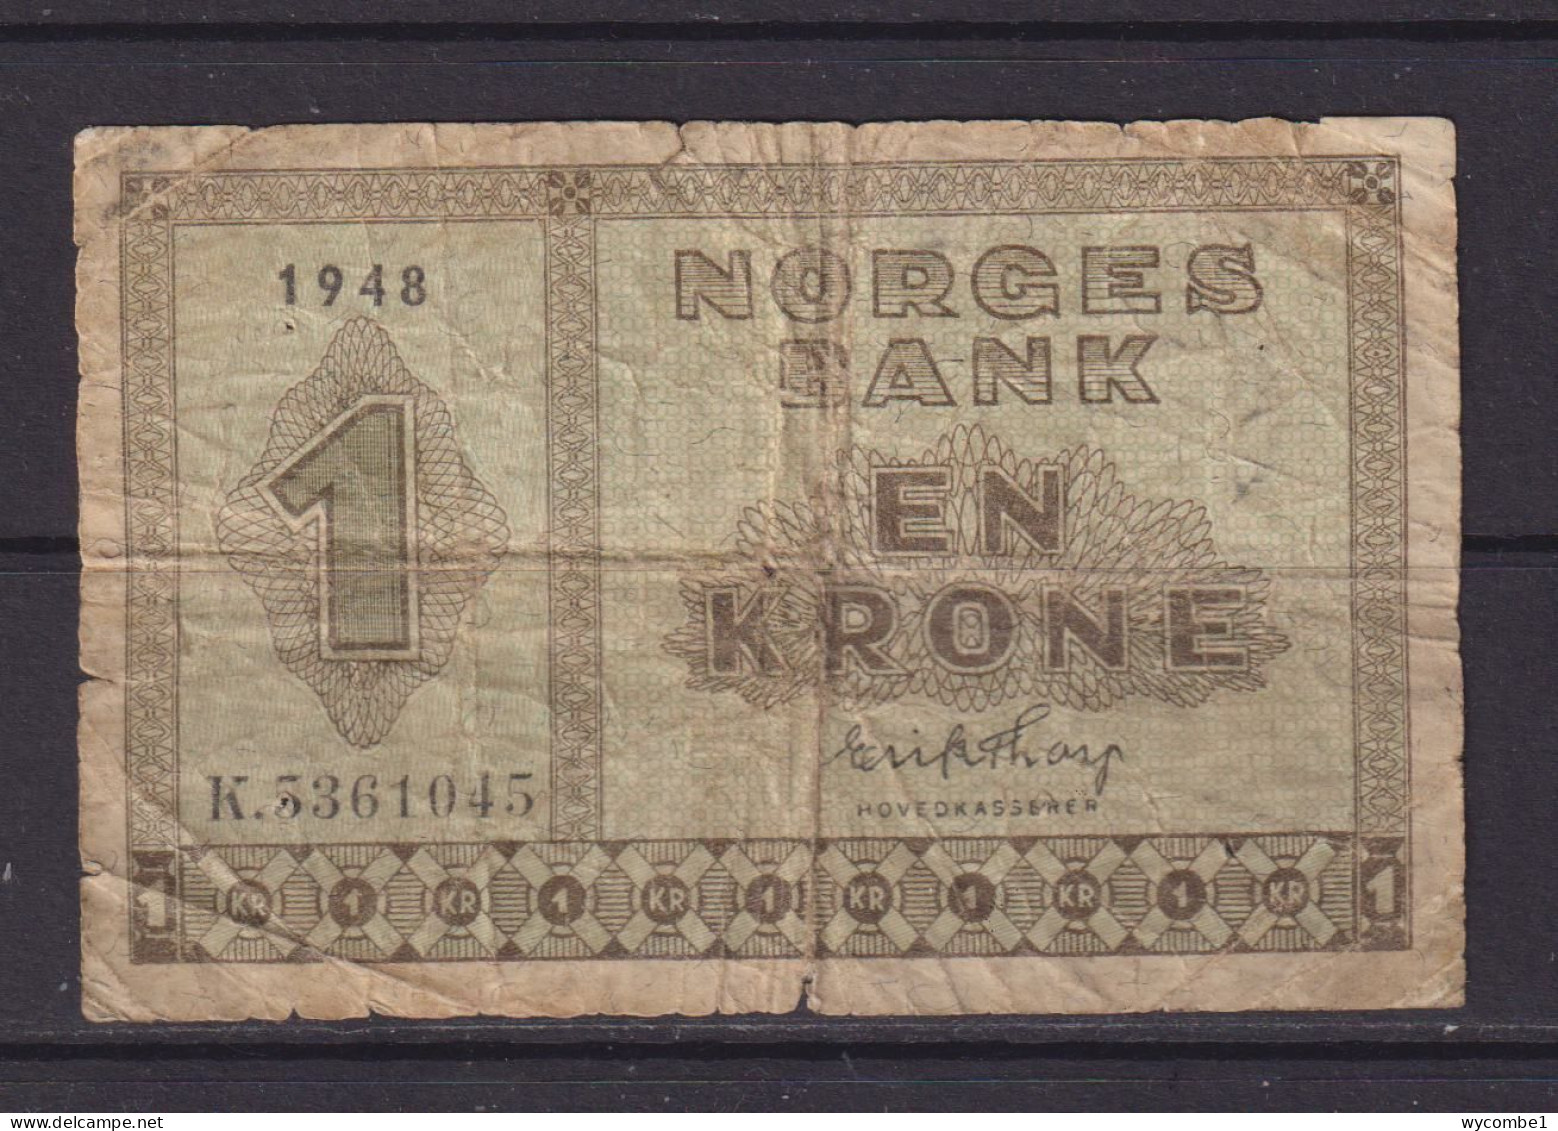 NORWAY - 1948 1 Krone Circulated Banknote - Norway